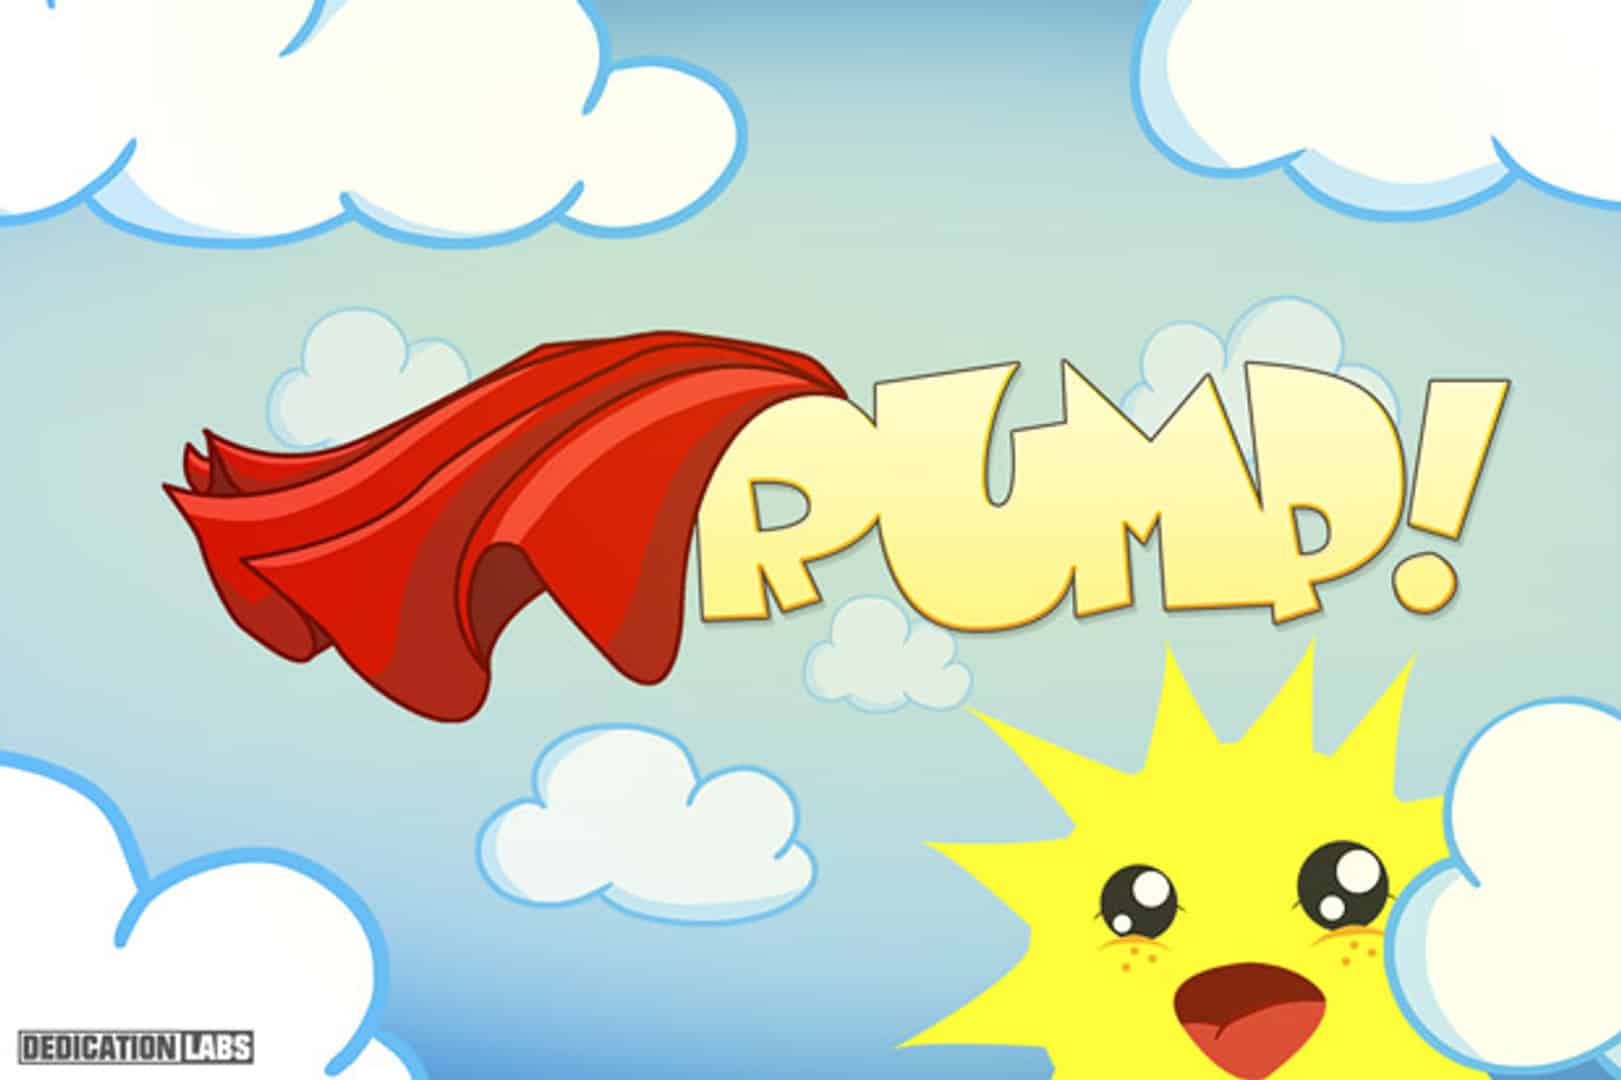 RUMP! - It's a Jump and Rump!